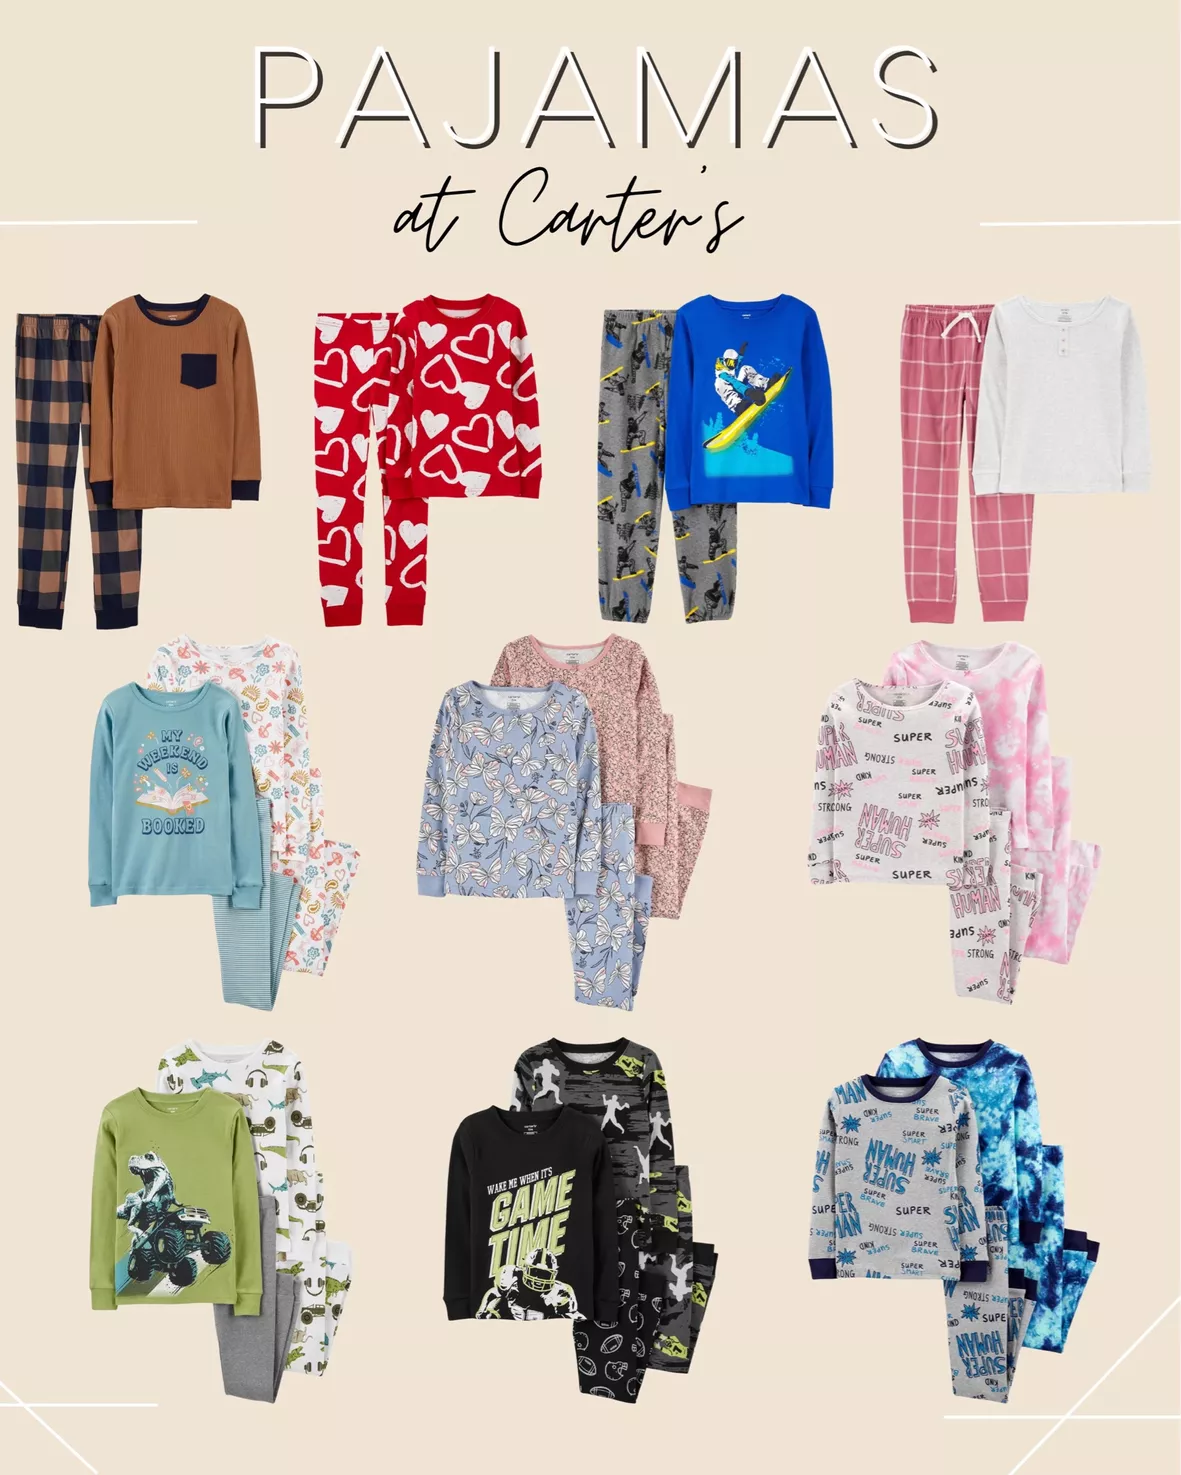 Carter's, Pajamas